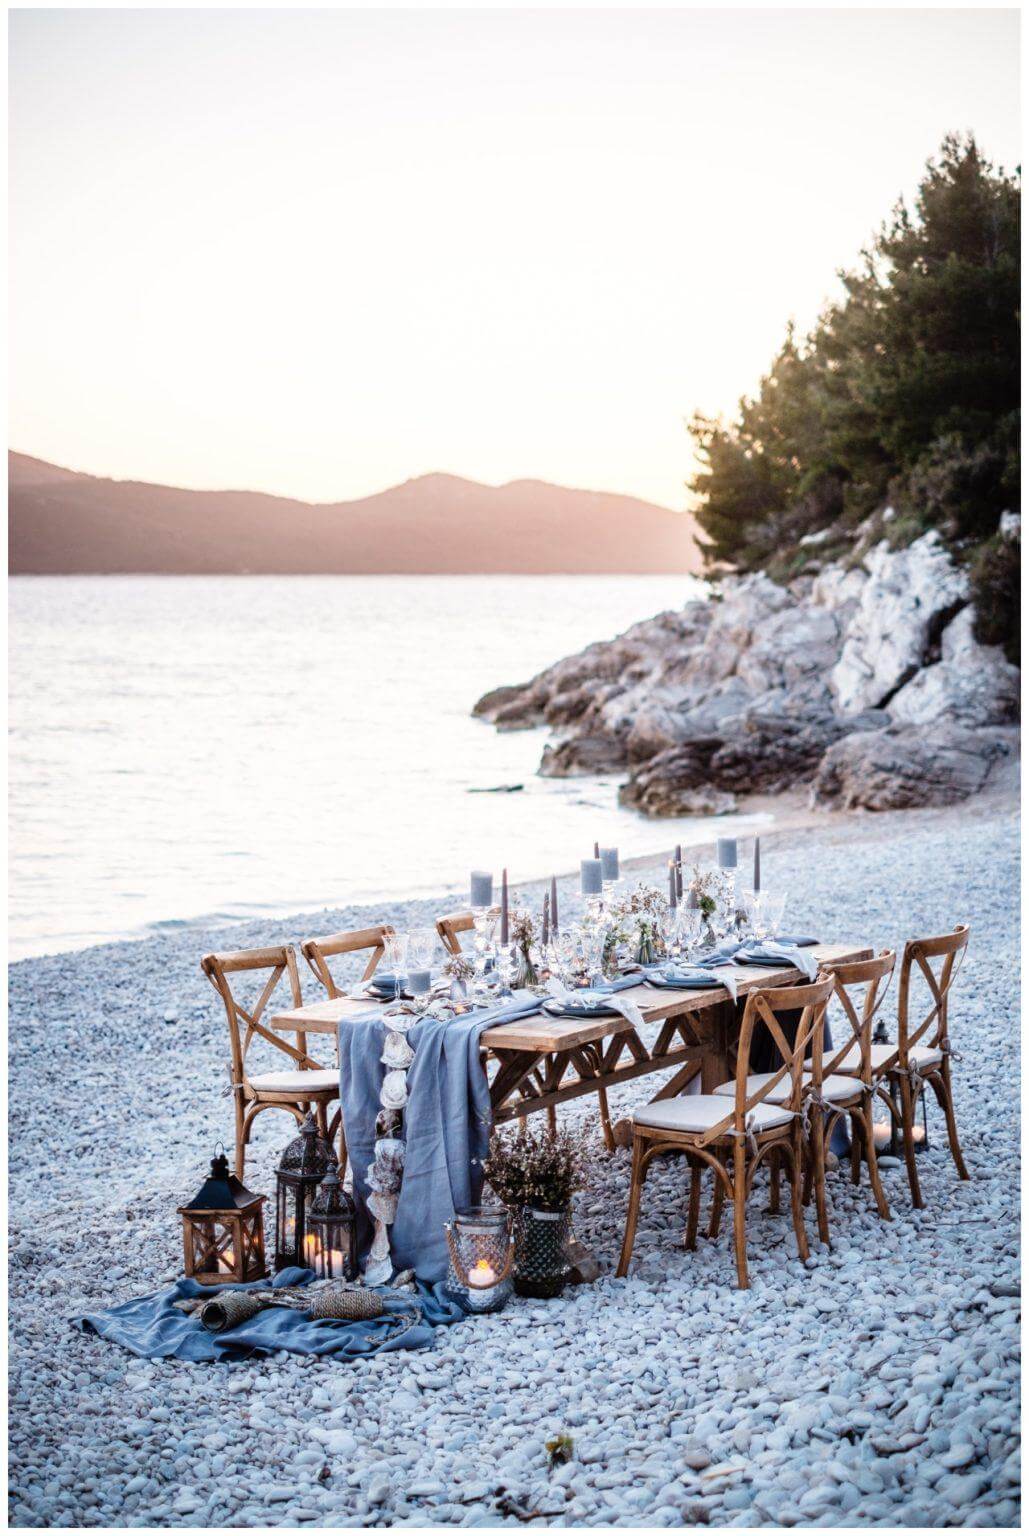 Hochzeit in Kroatien Tischdeko in blau und weiß mit Austern Wedding Kroatien, wedding in croatia,hochzeitsplanerin kroatien, hochzeit in kroatien